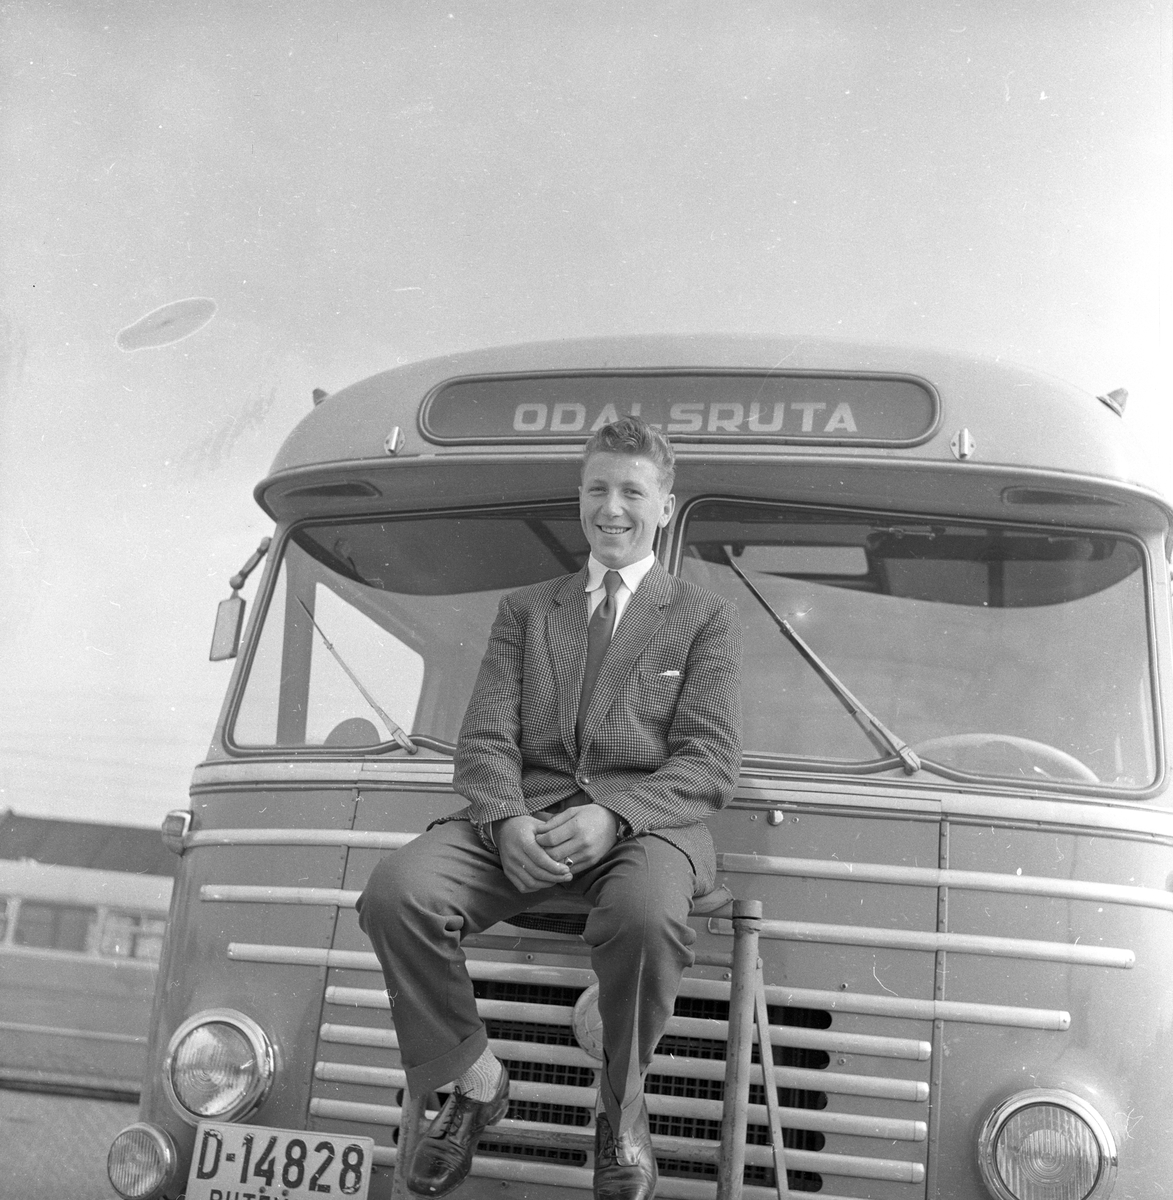 Mann sitter i fronten på bussen "Odalsruta".